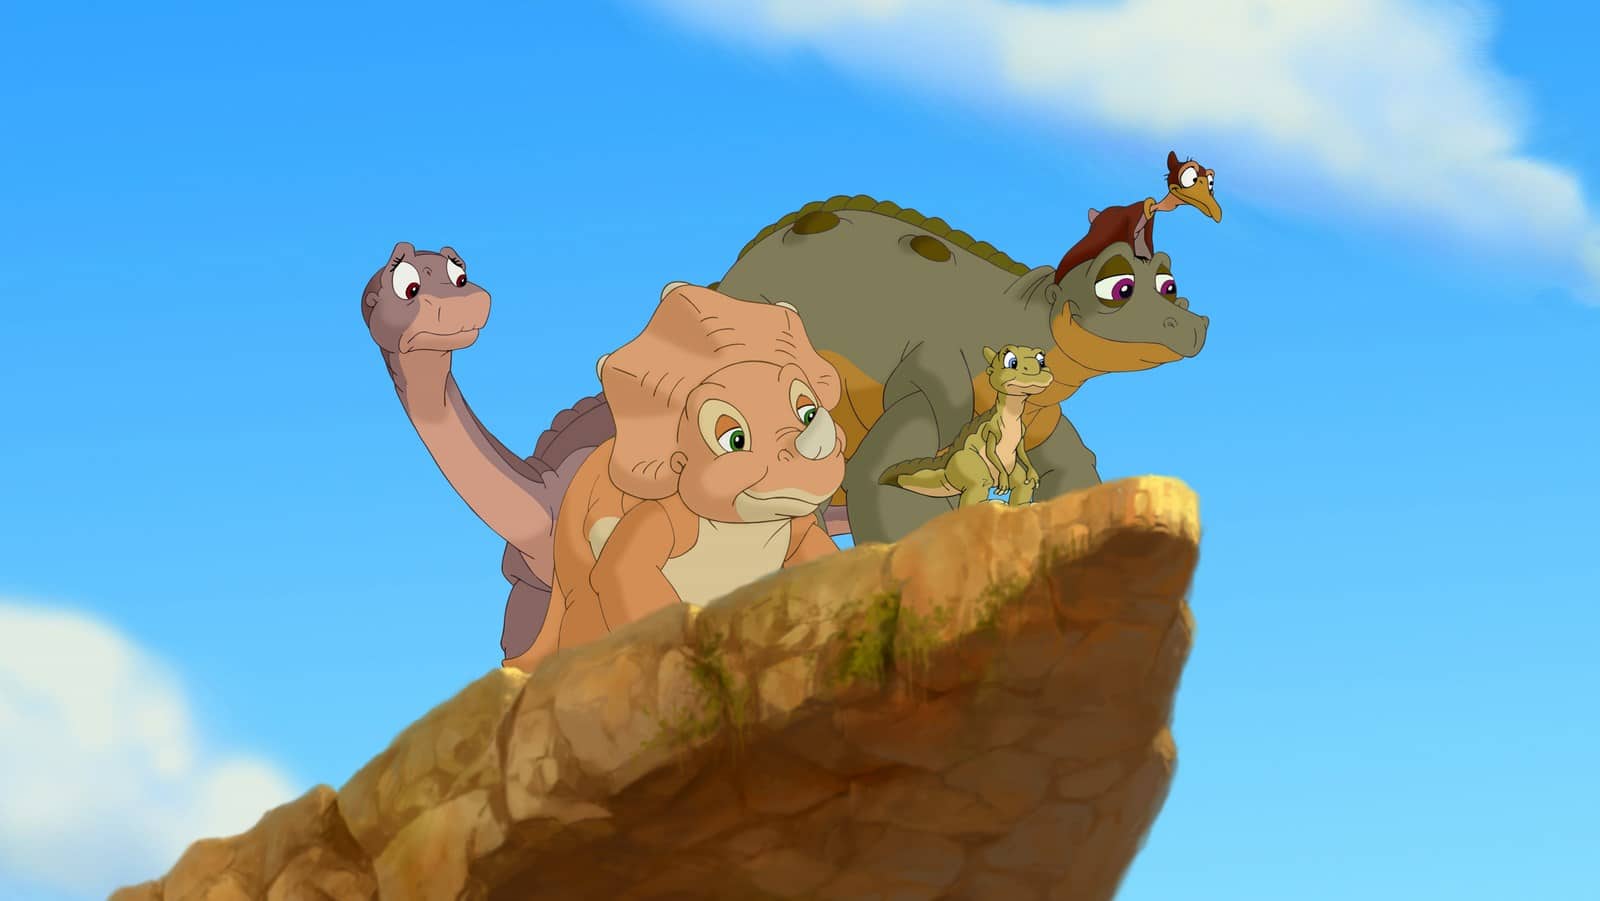 Imagens do Dinotrem e Imagens de Dinossauros  Imagens de dinossauros,  Descoberta infantil, Disney tangled